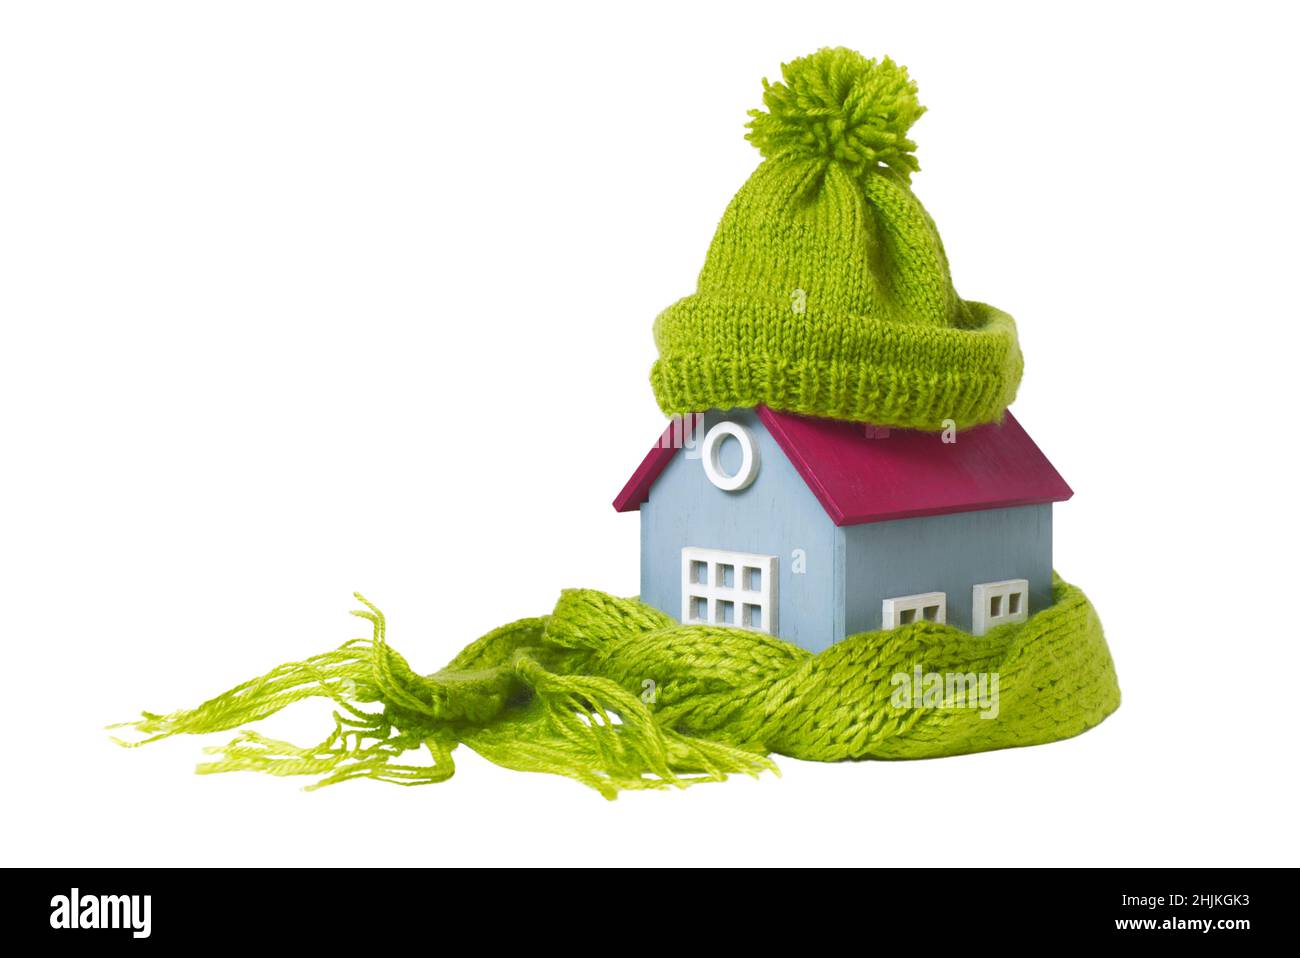 Casa Modelo en Miniatura Conceptual con sombrero de lana verde y bufanda, aislada sobre fondo blanco Foto de stock